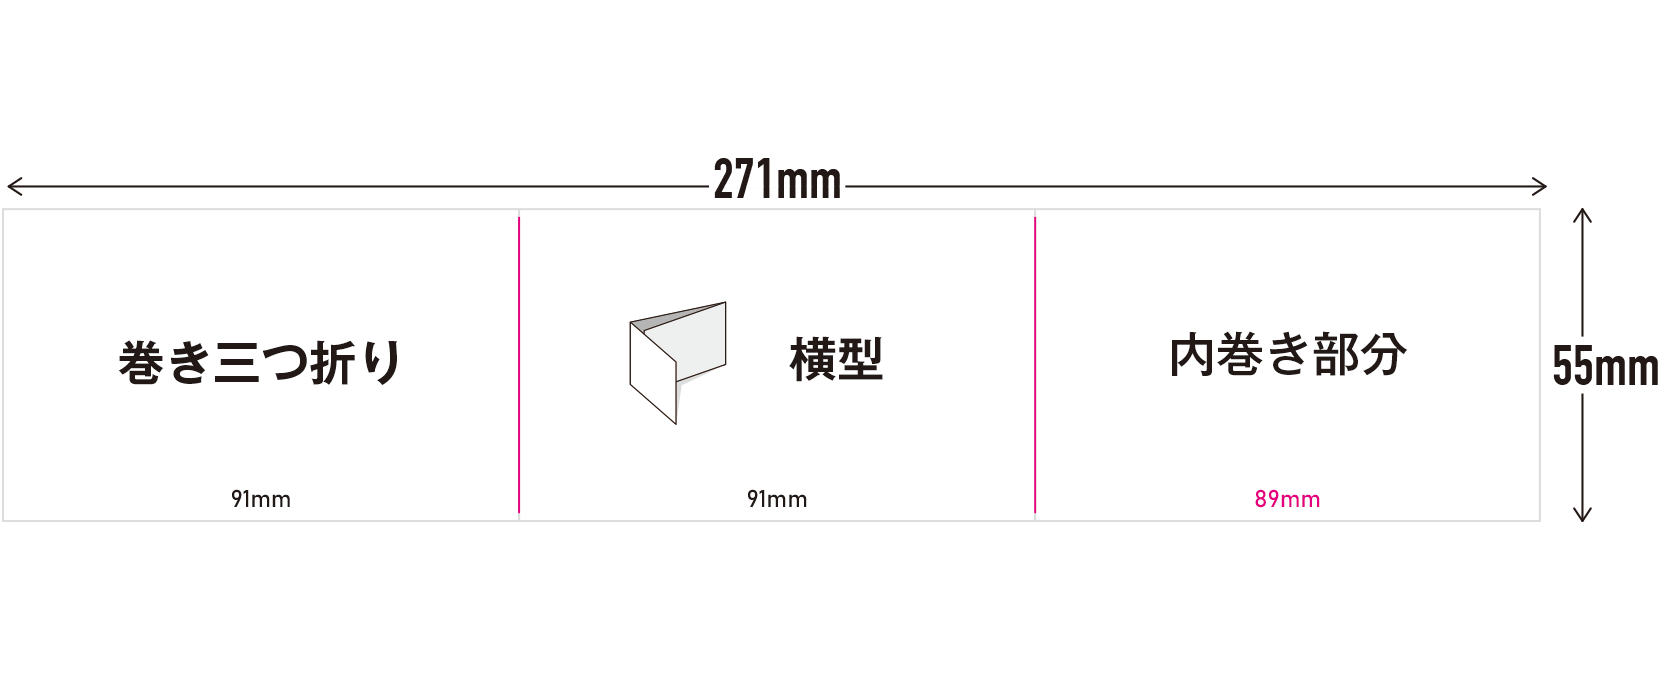 3つ折り 横型サイズ（271×55mm）